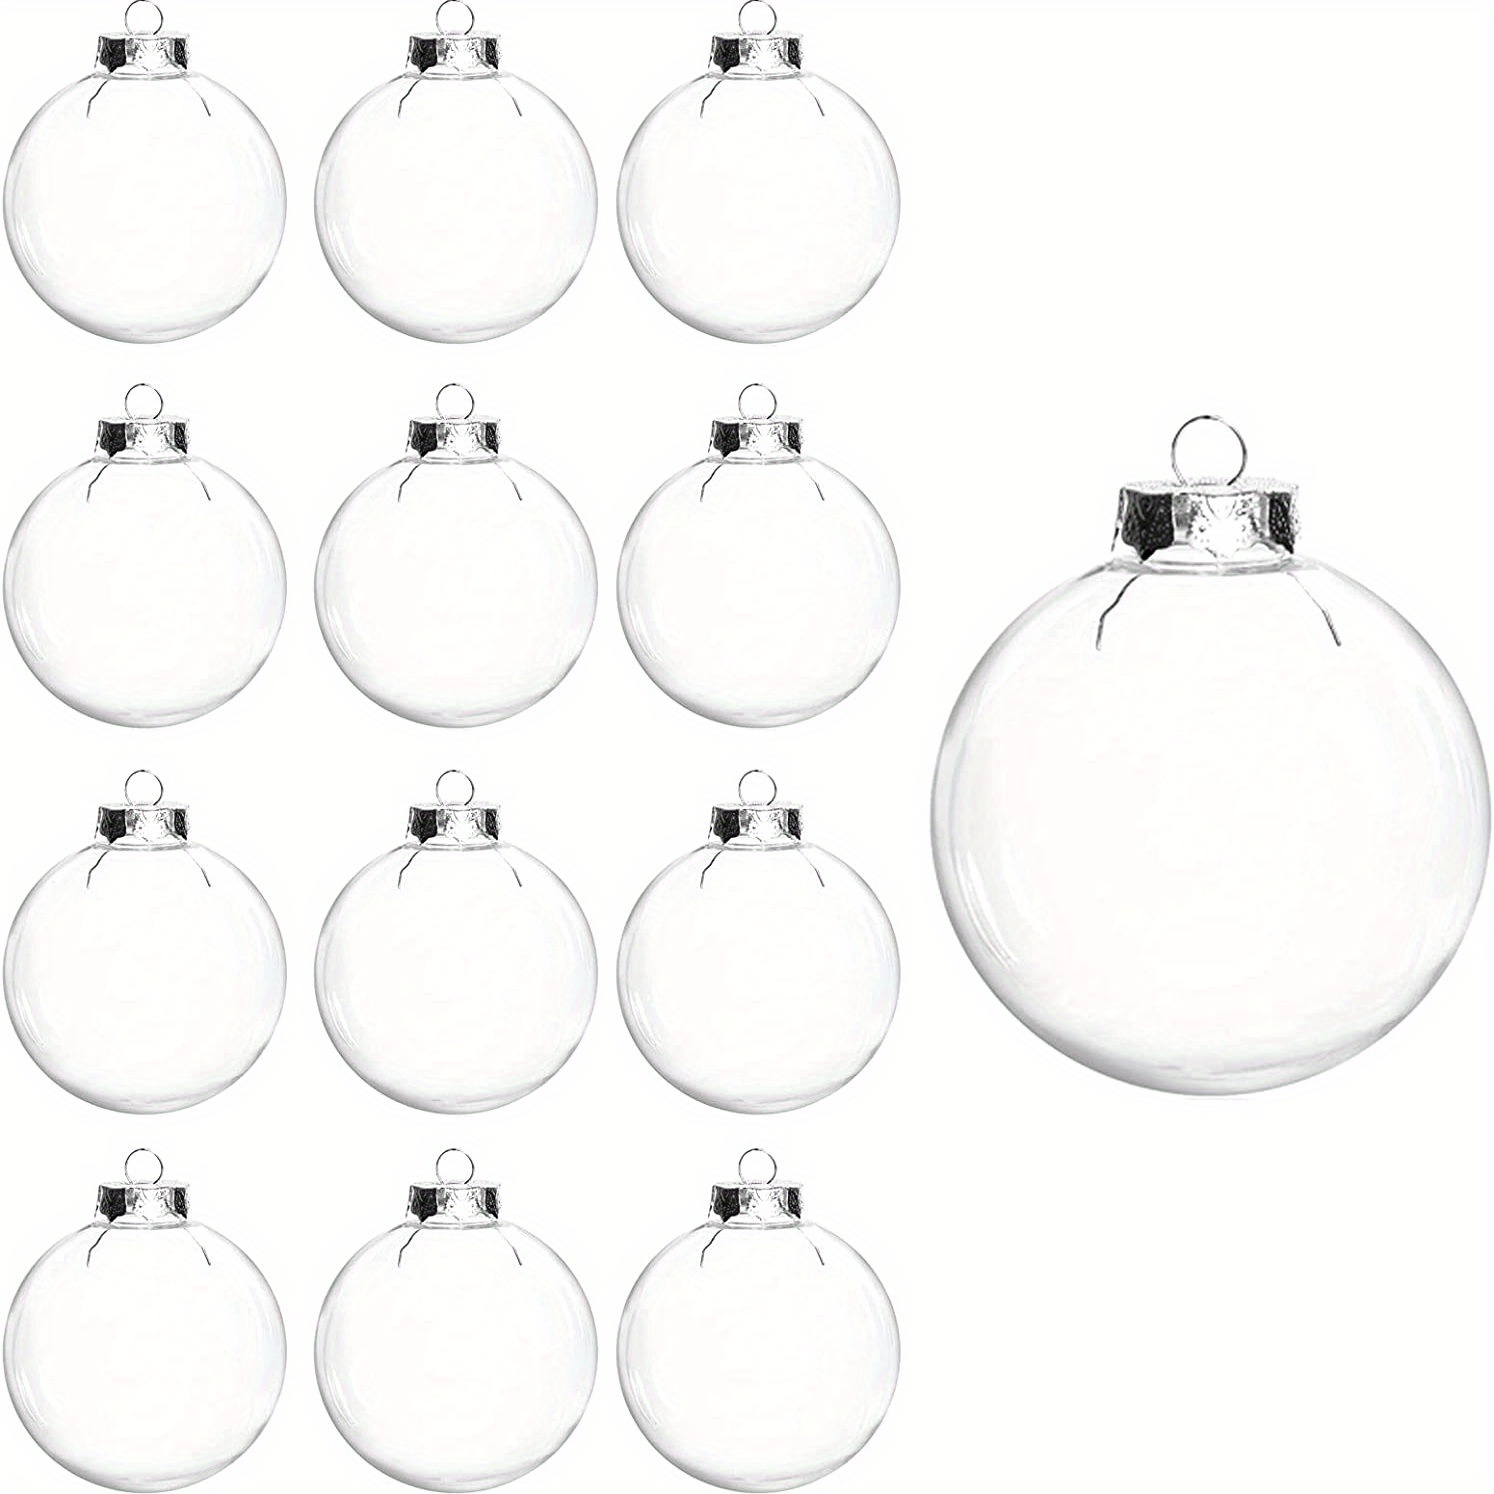 Clear Plastic Scenic Ball Ornament